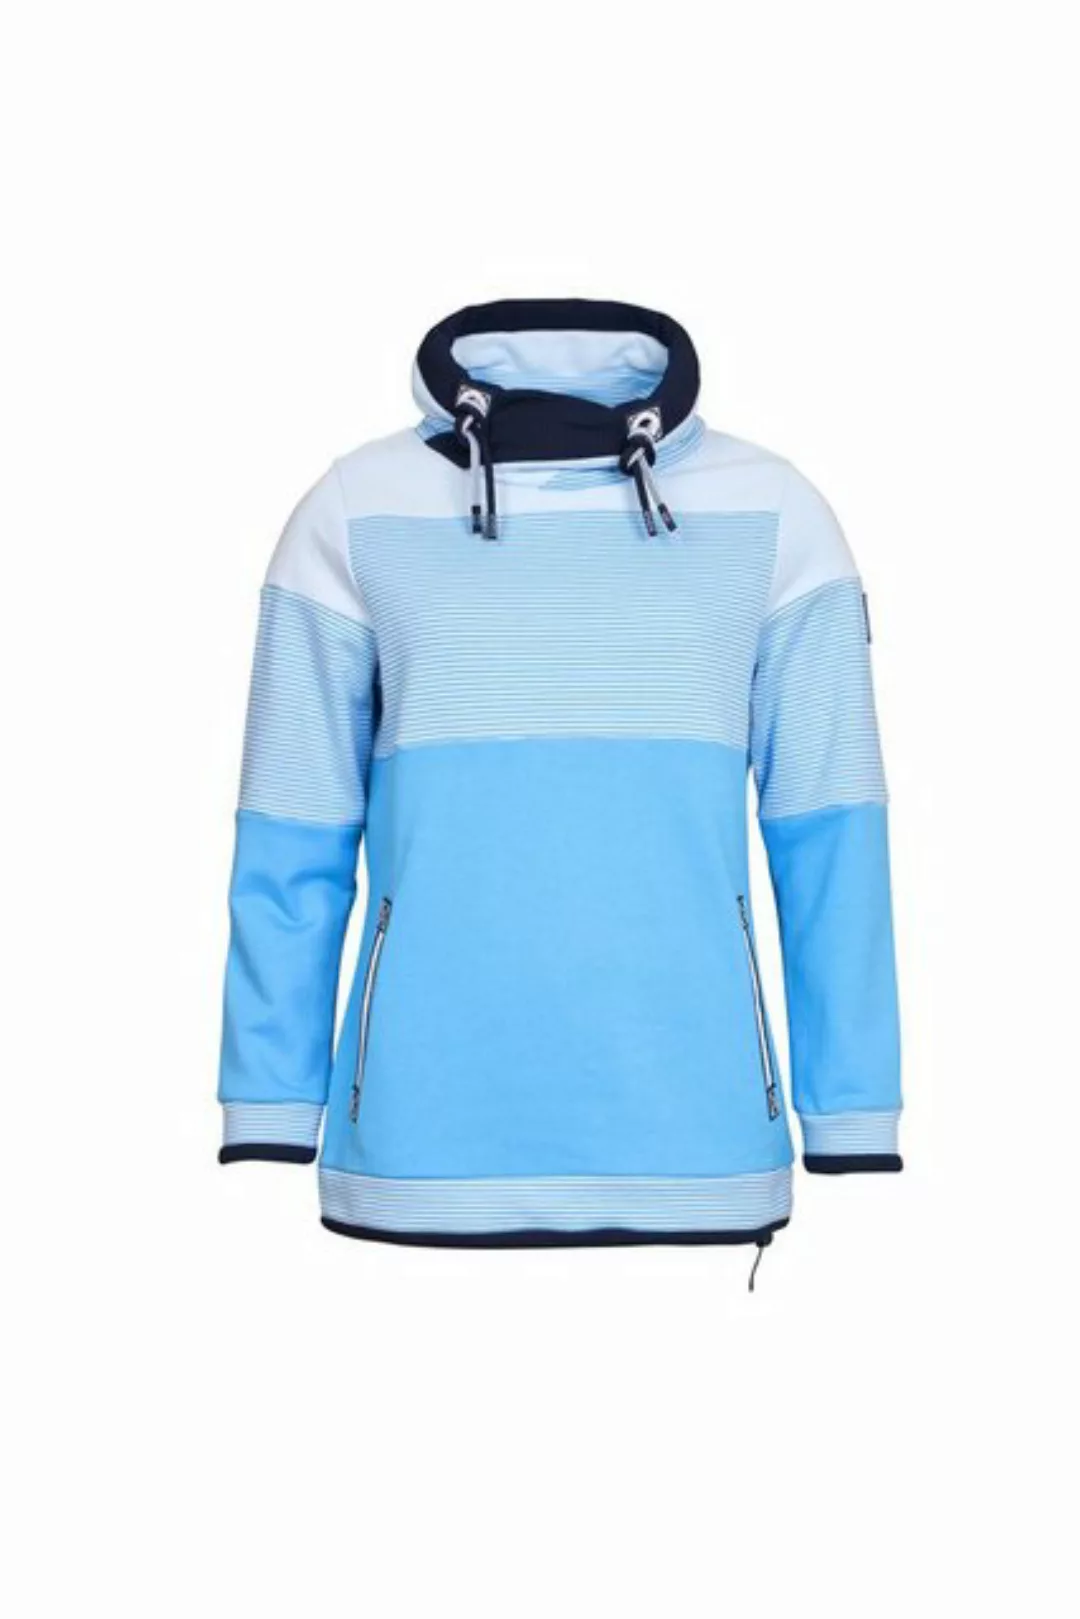 SER Sweatshirt Sweatshirt 3er Flächenteilung W9924606S auch in großen Größe günstig online kaufen